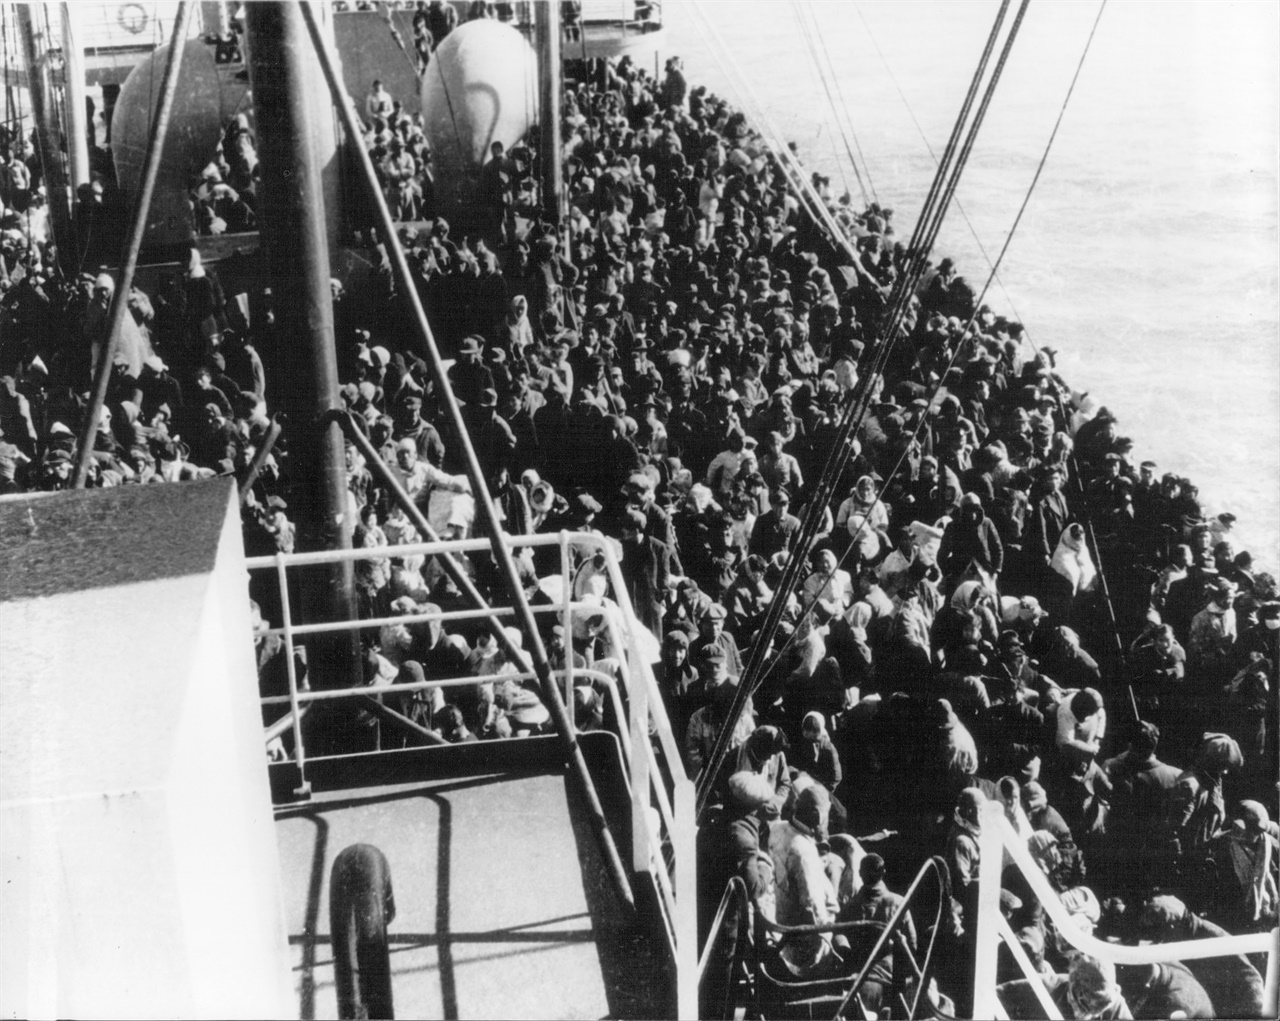  14000명의 피난민을 태우고 흥남부두를 탈출한 메러디스 빅토리호,손양영씨의 부모님도 이 배에 탔다.